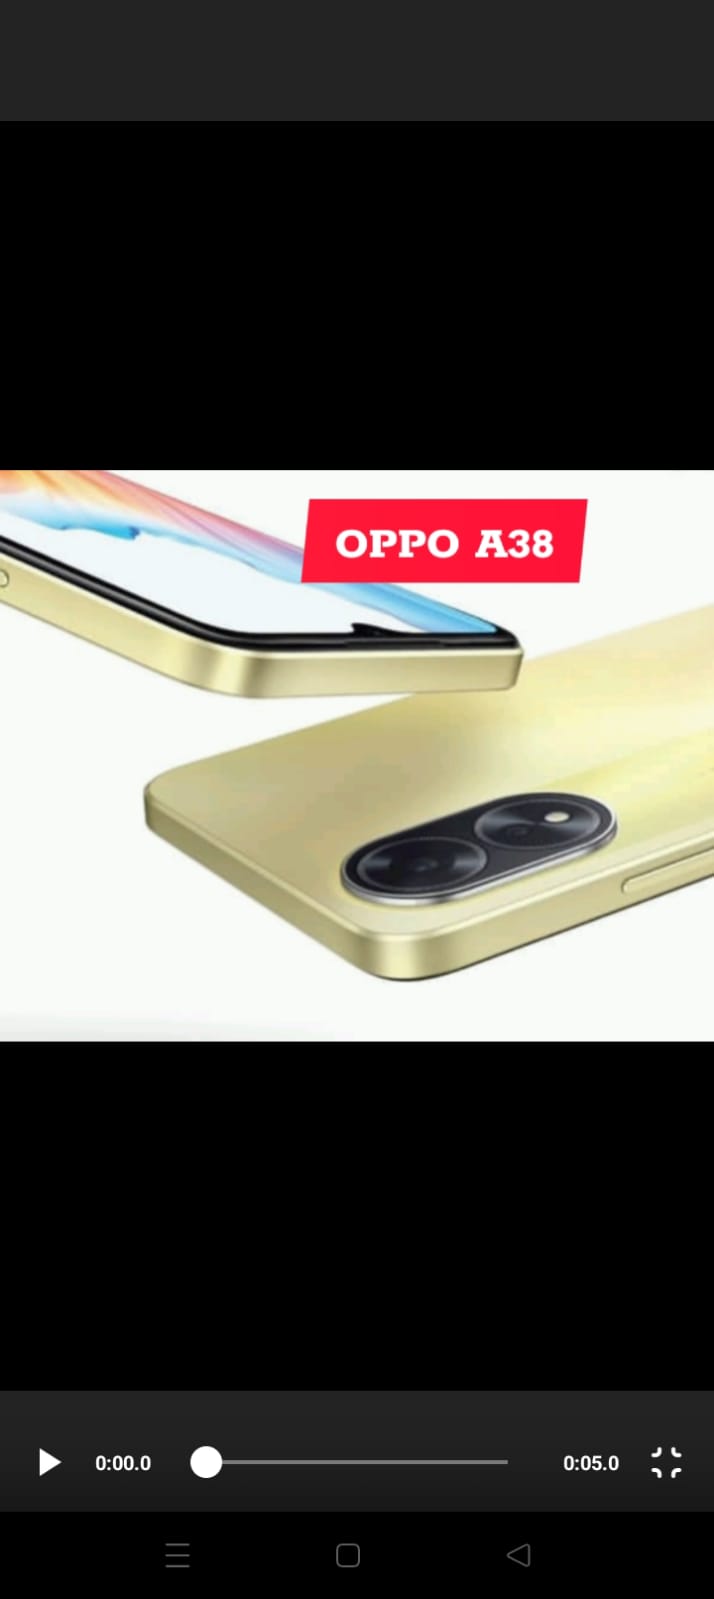  OPPO A38, Tingkat Kecerahan Kamera Tinggi, didukung mediatek hyperEngine gaming technology